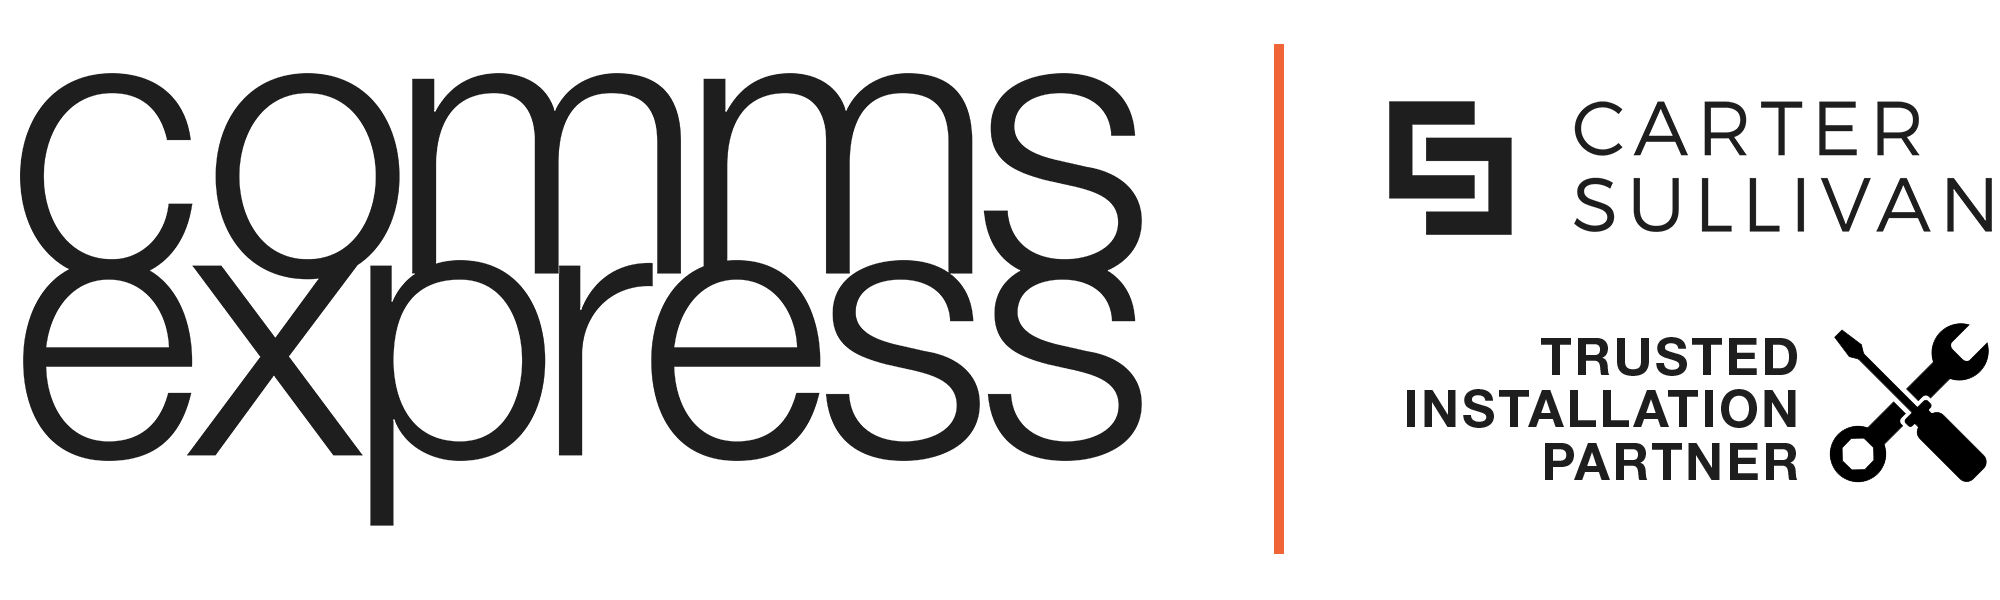 Comms Express trusted installation partner - Carter Sullivan logo